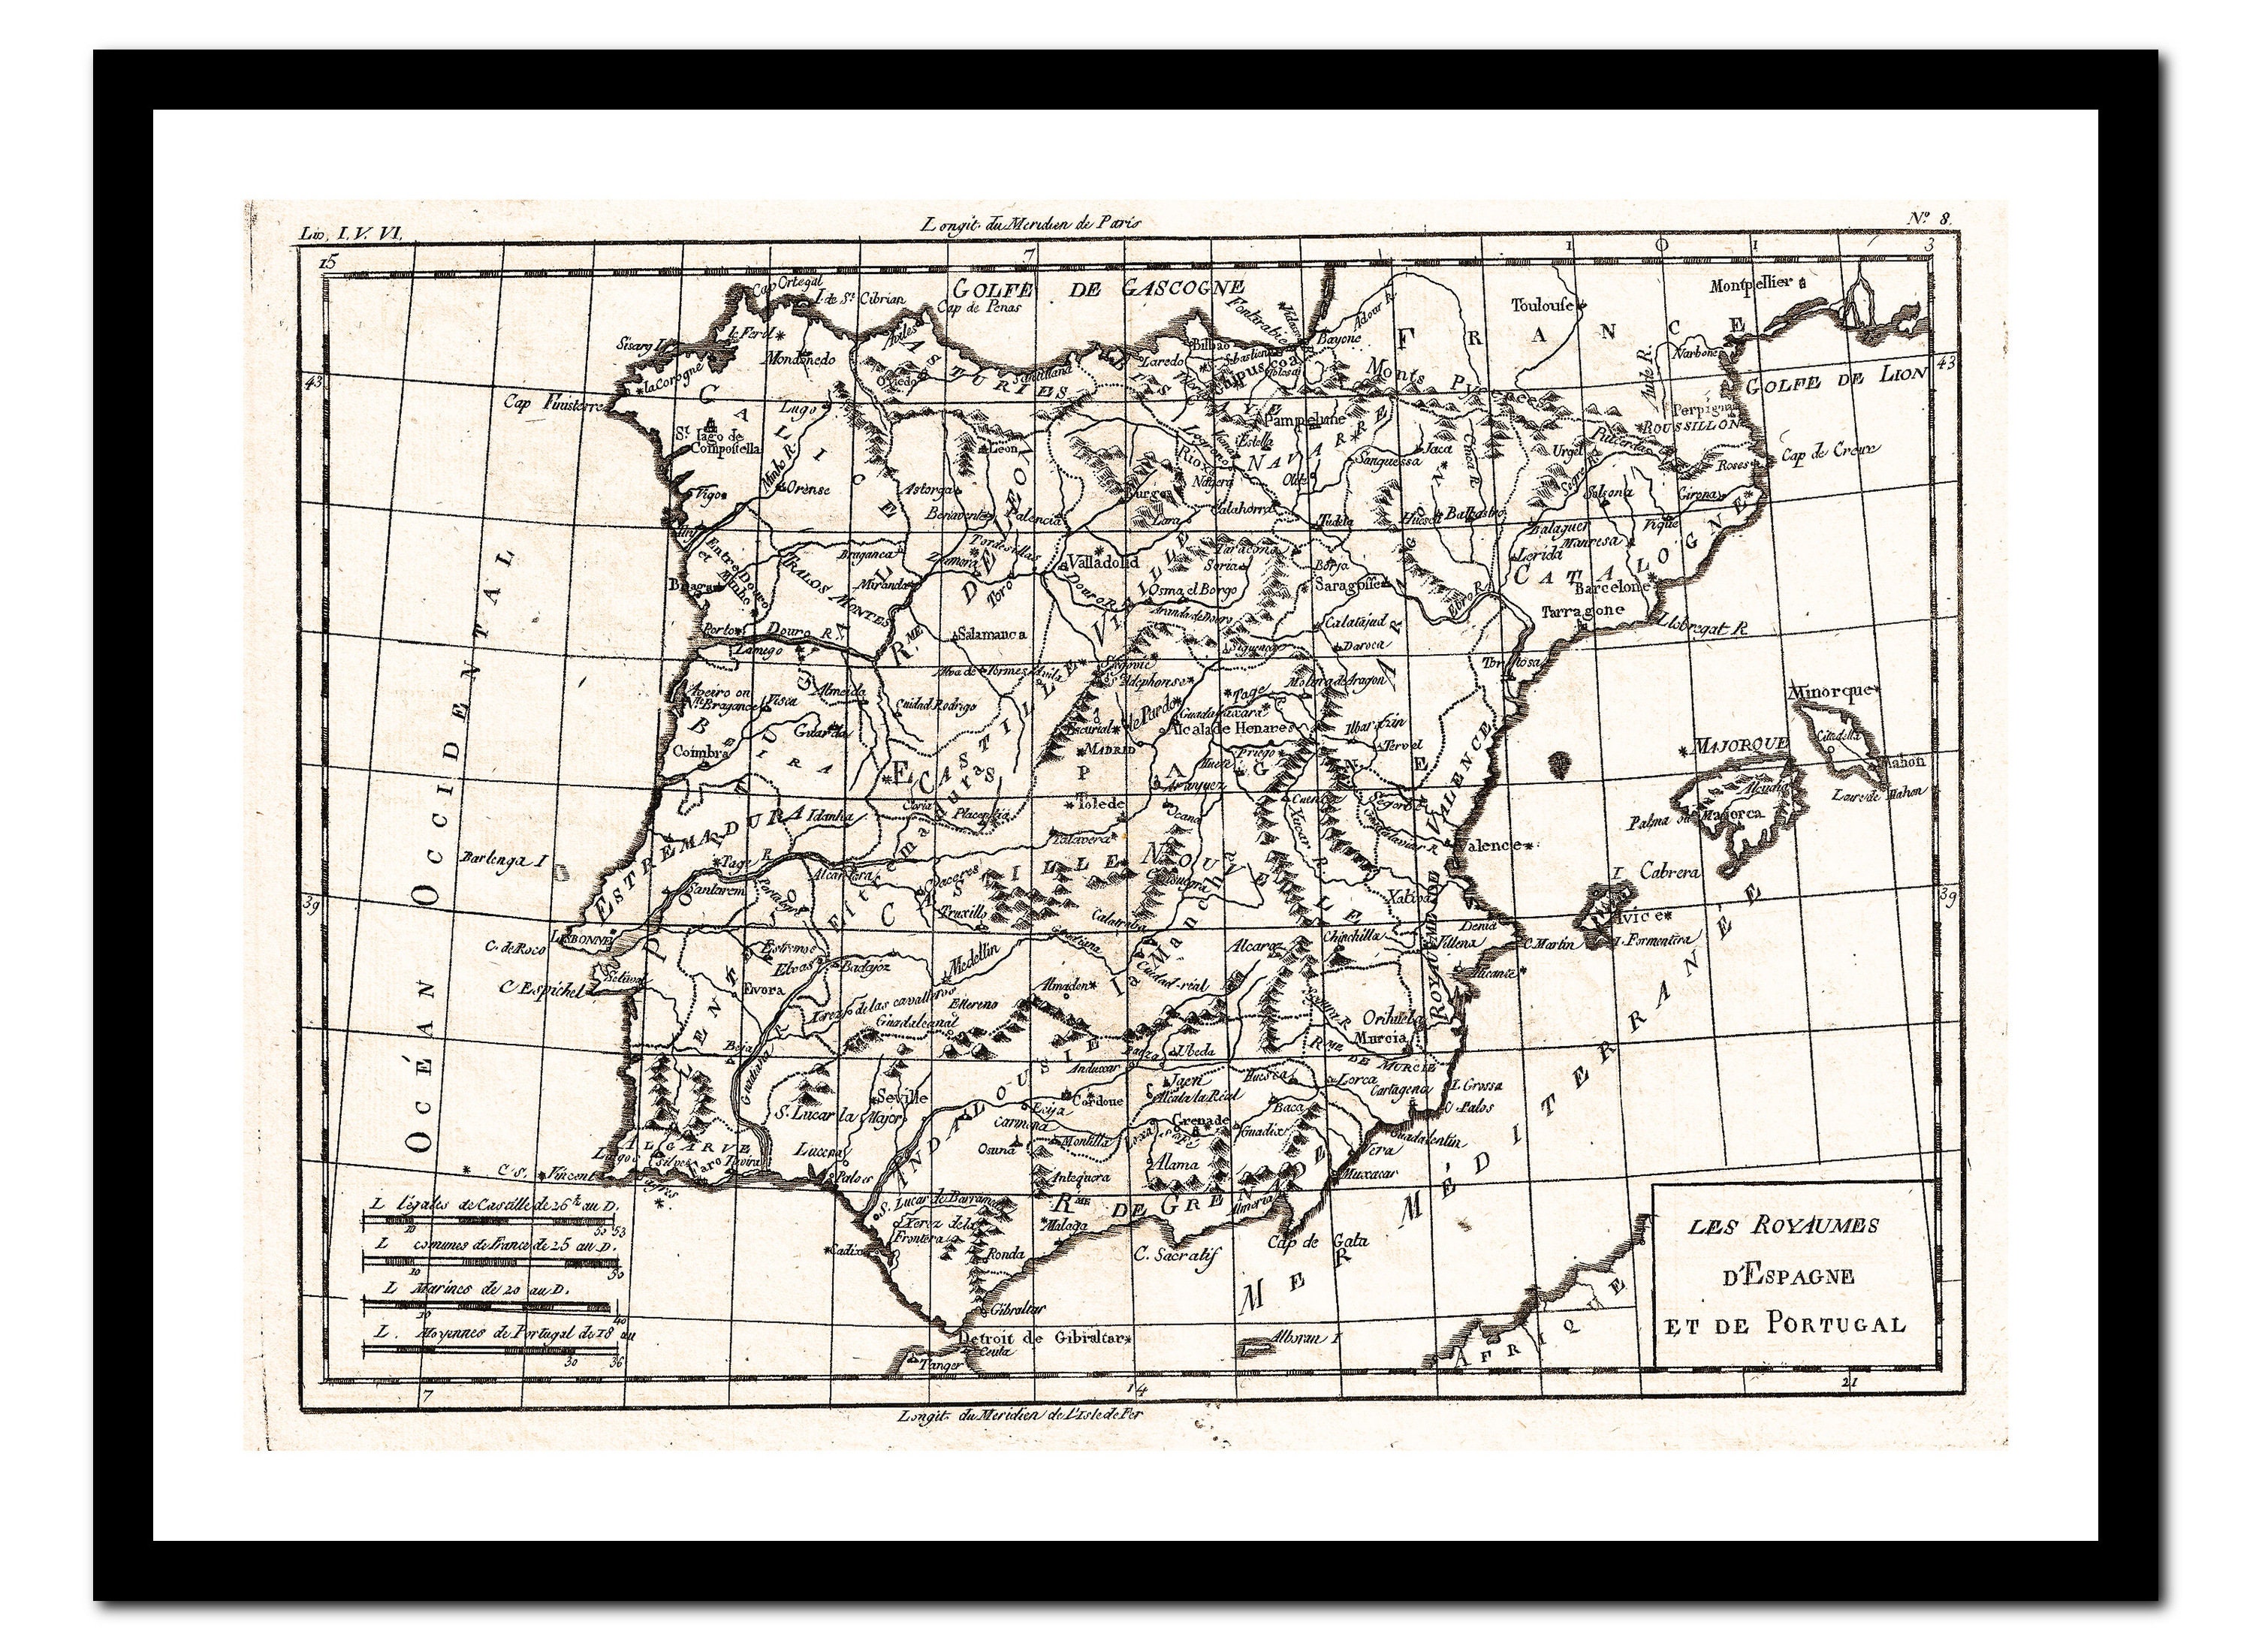 Mapa antiguo de portugal fotografías e imágenes de alta resolución - Alamy